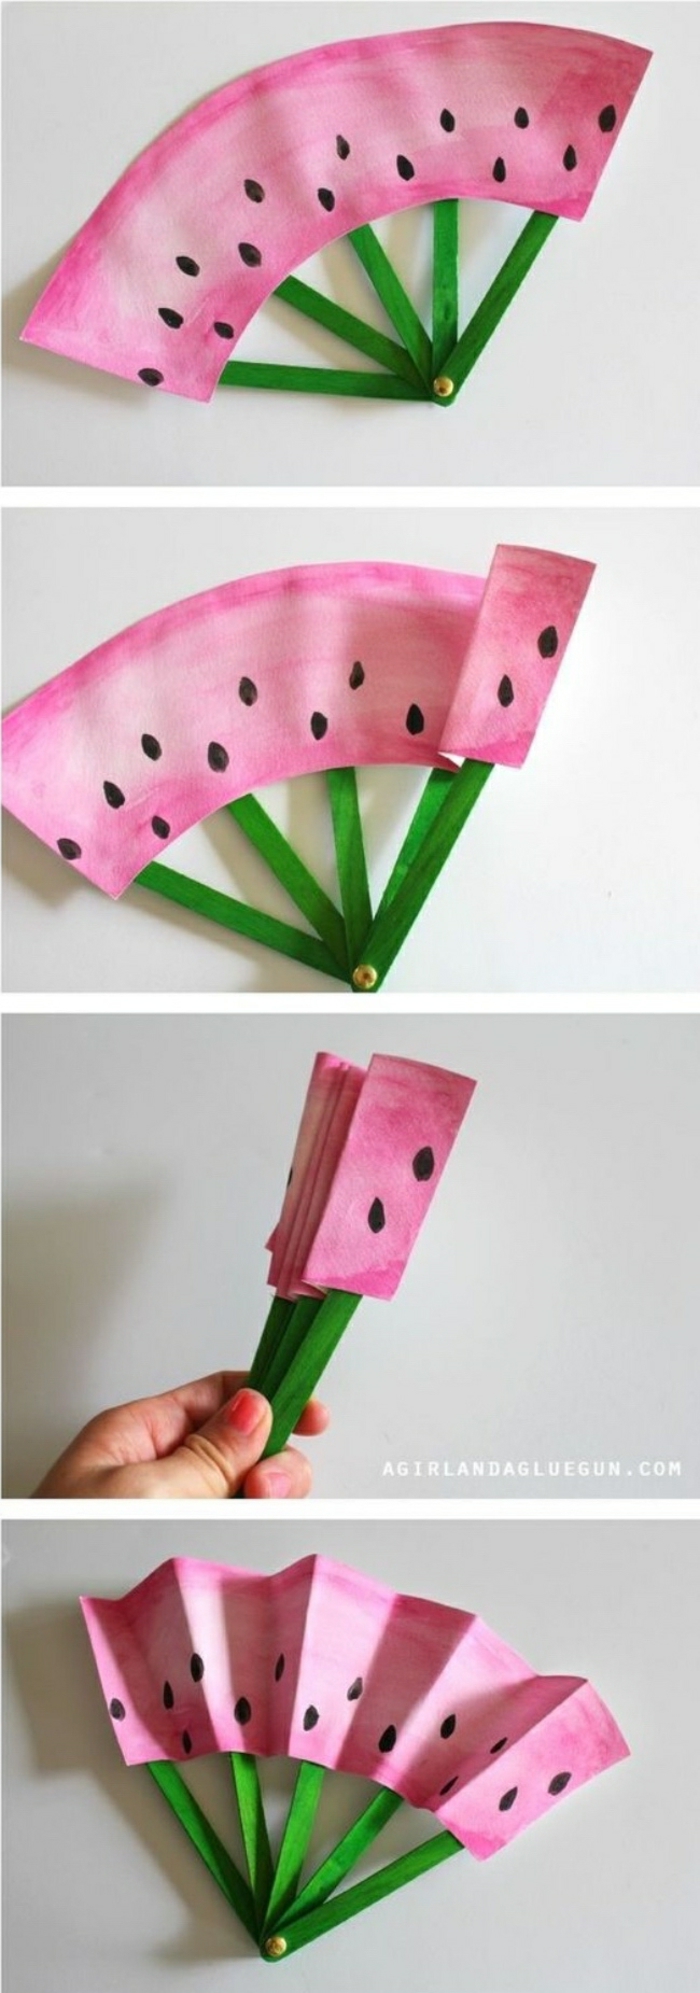 basteln mit kindern sommer ideen zum nachmachen, eine erfrischung in form von wassermelone, basteln mit papier